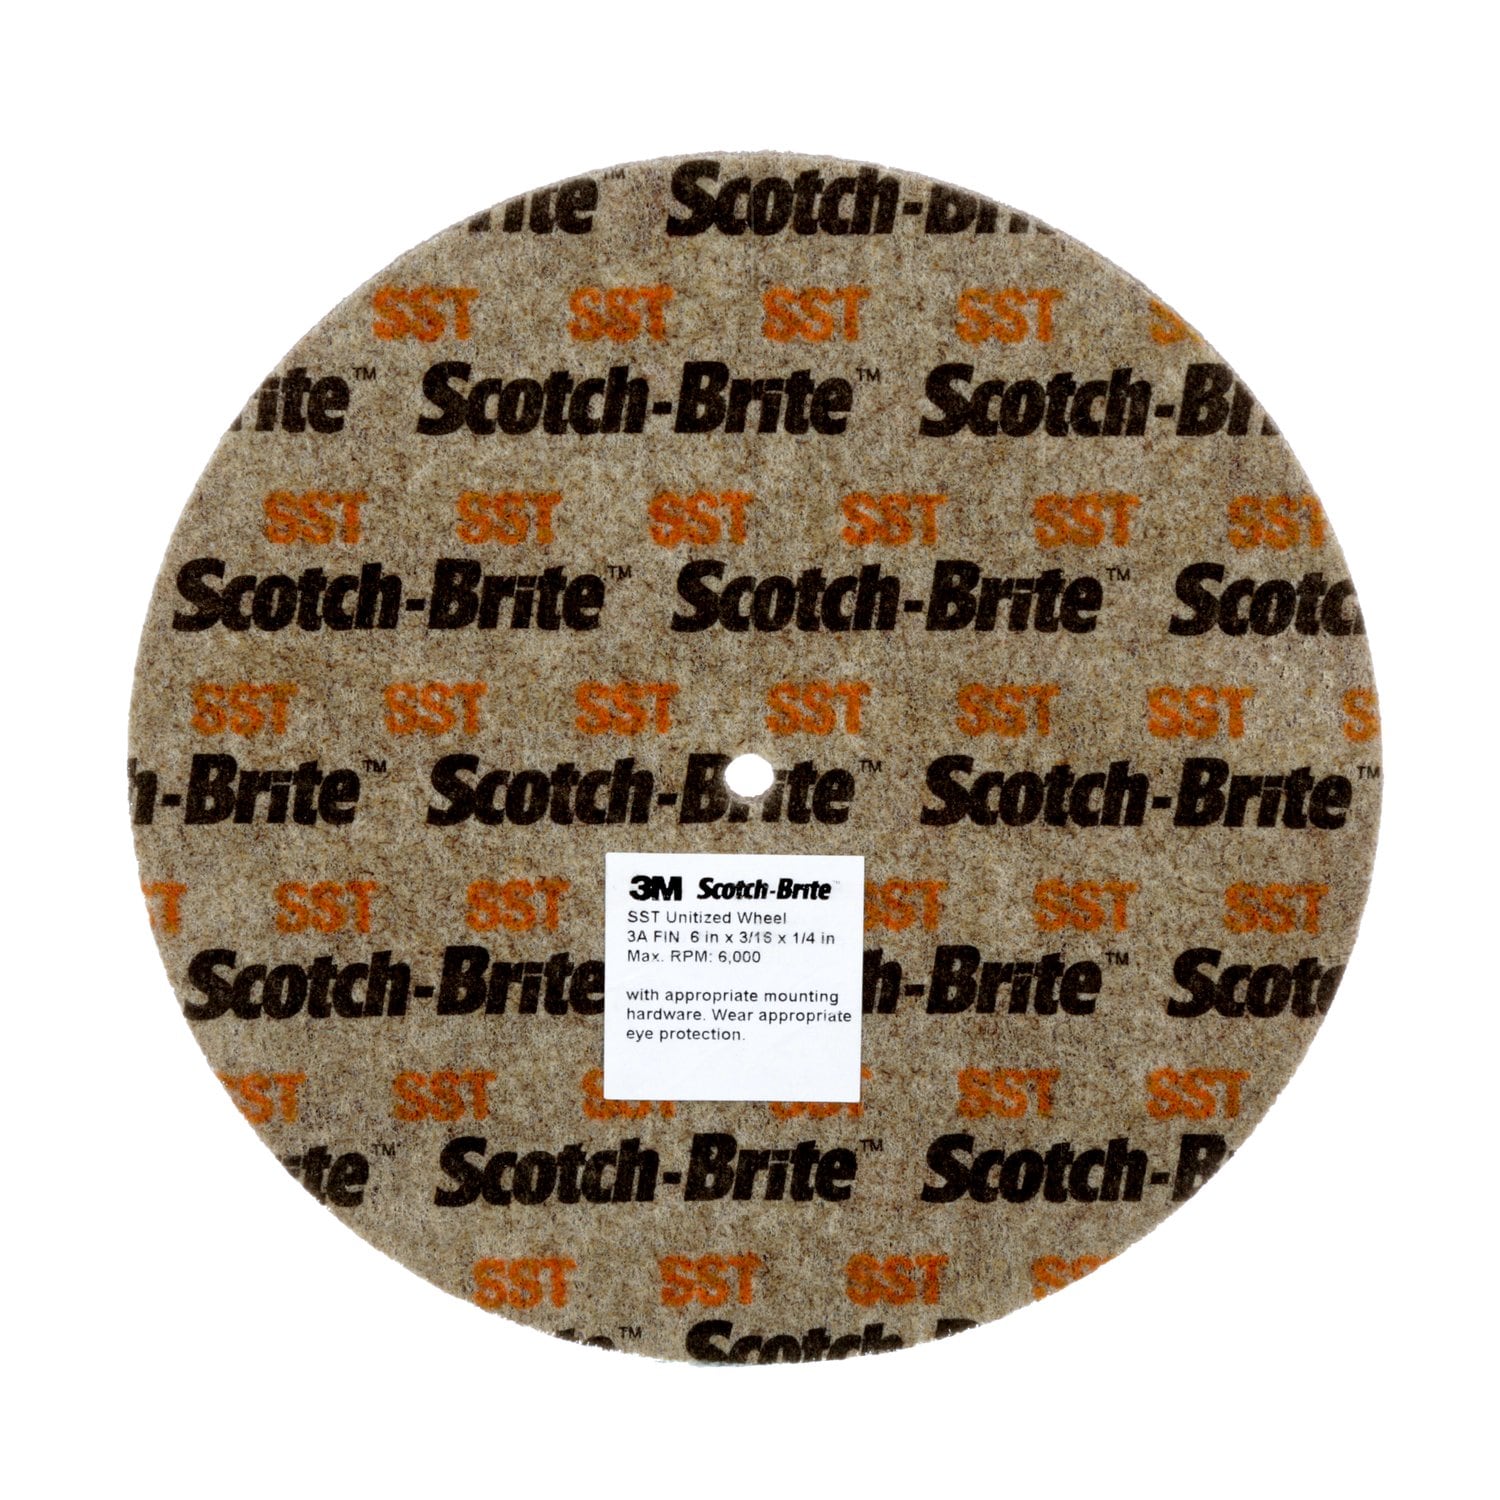 7010309317 - Scotch-Brite SST Unitized Wheel, 3 in x 1/2 in x 1/4 in 3A FIN, 20
ea/Case